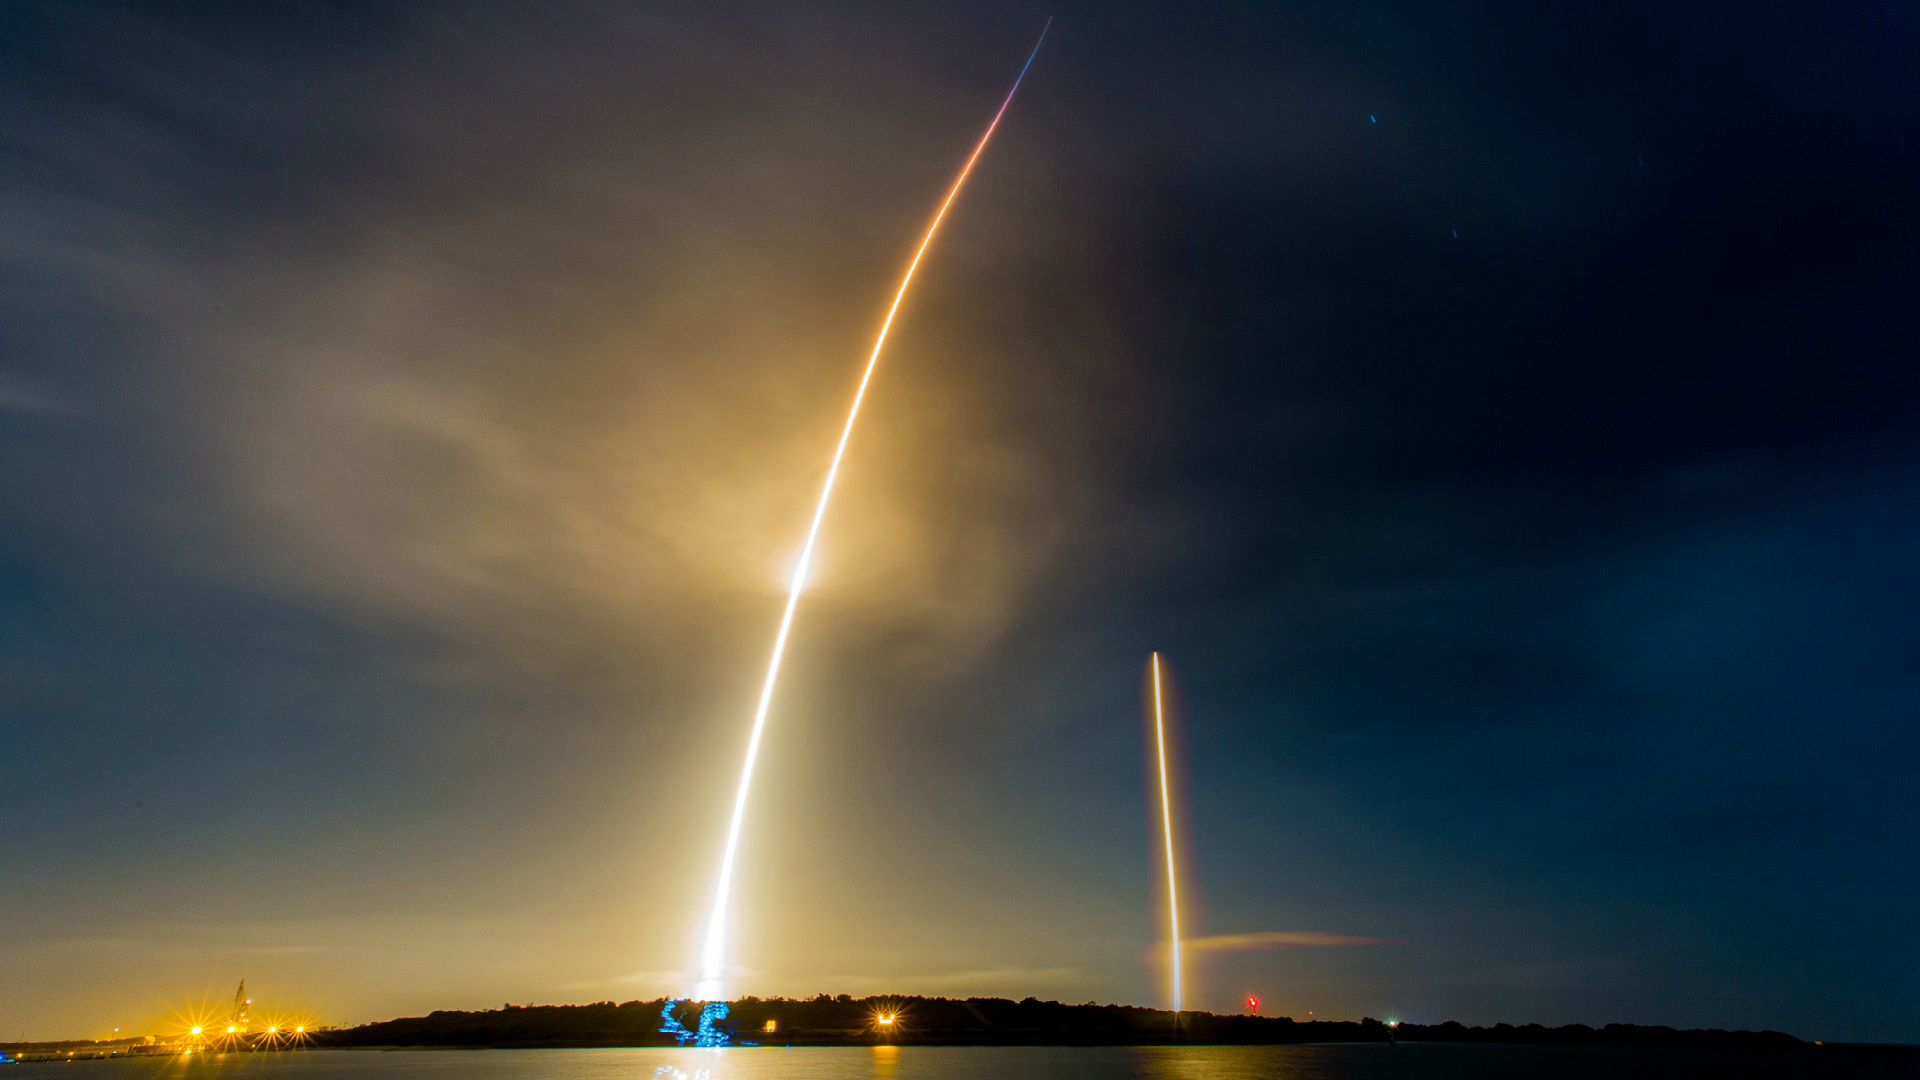 Long Exposure của SpaceX Launching and Landing - một bức ảnh cực kỳ đậm chất nghệ thuật không những thể hiện sự hoành tráng trong quá trình phóng tên lửa vũ trụ, mà còn tạo ra một thế giới hoàn chỉnh màu sắc và ánh sáng. Hãy thưởng thức những bức hình đẹp như tranh và cảm nhận được sự độc đáo của chúng.